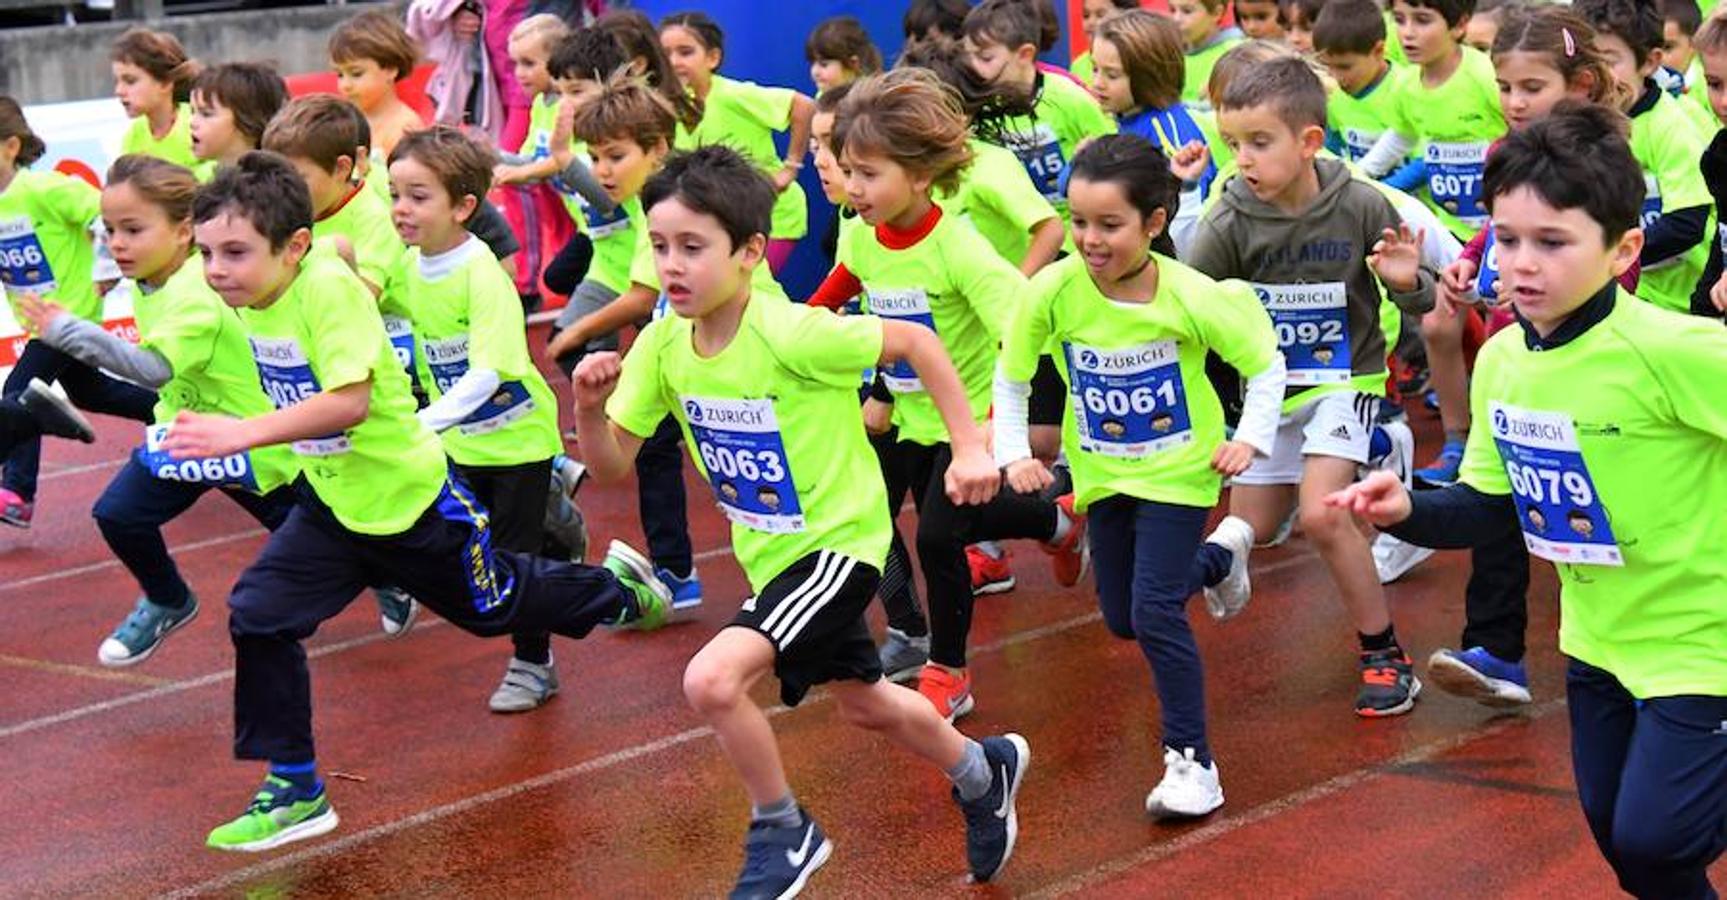 1.200 korrikalaris de 3 a 13 años toman el Miniestadio de Anoeta con motivo del Maratoi Txiki Festa